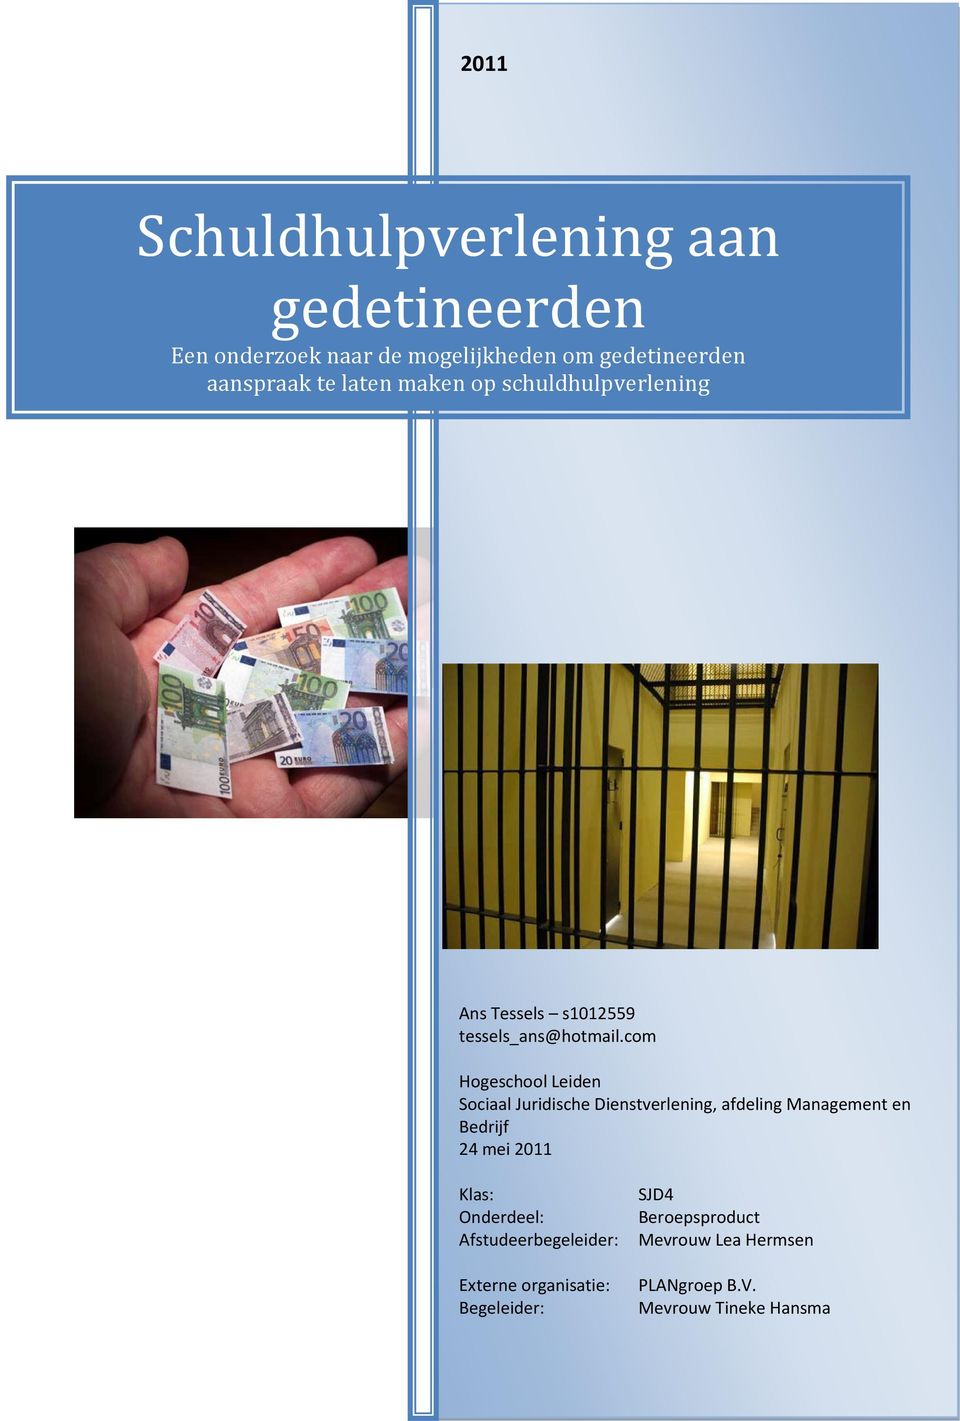 com Hogeschool Leiden Sociaal Juridische Dienstverlening, afdeling Management en Bedrijf 24 mei 2011 Klas: